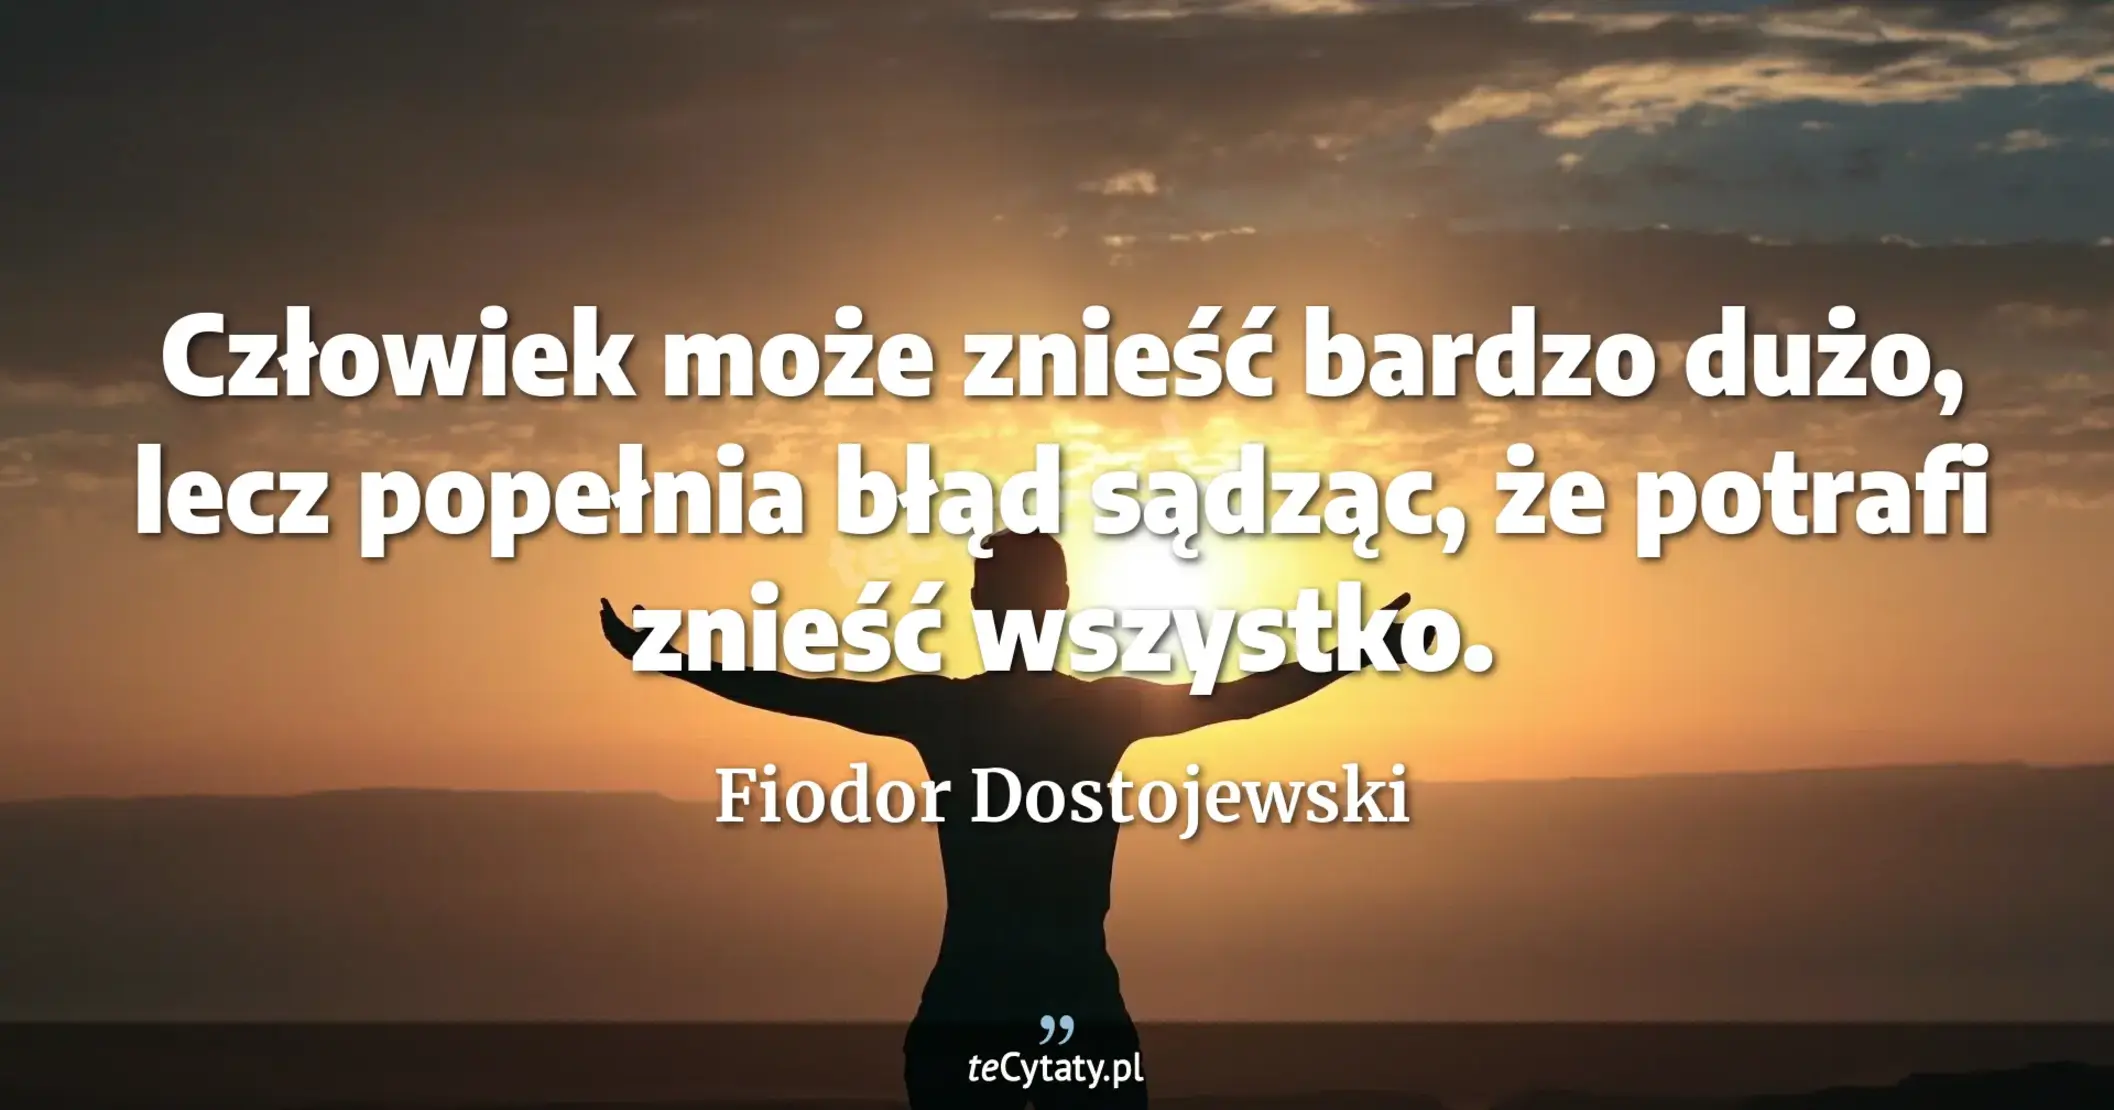 Człowiek może znieść bardzo dużo, lecz popełnia błąd sądząc, że potrafi znieść wszystko. - Fiodor Dostojewski